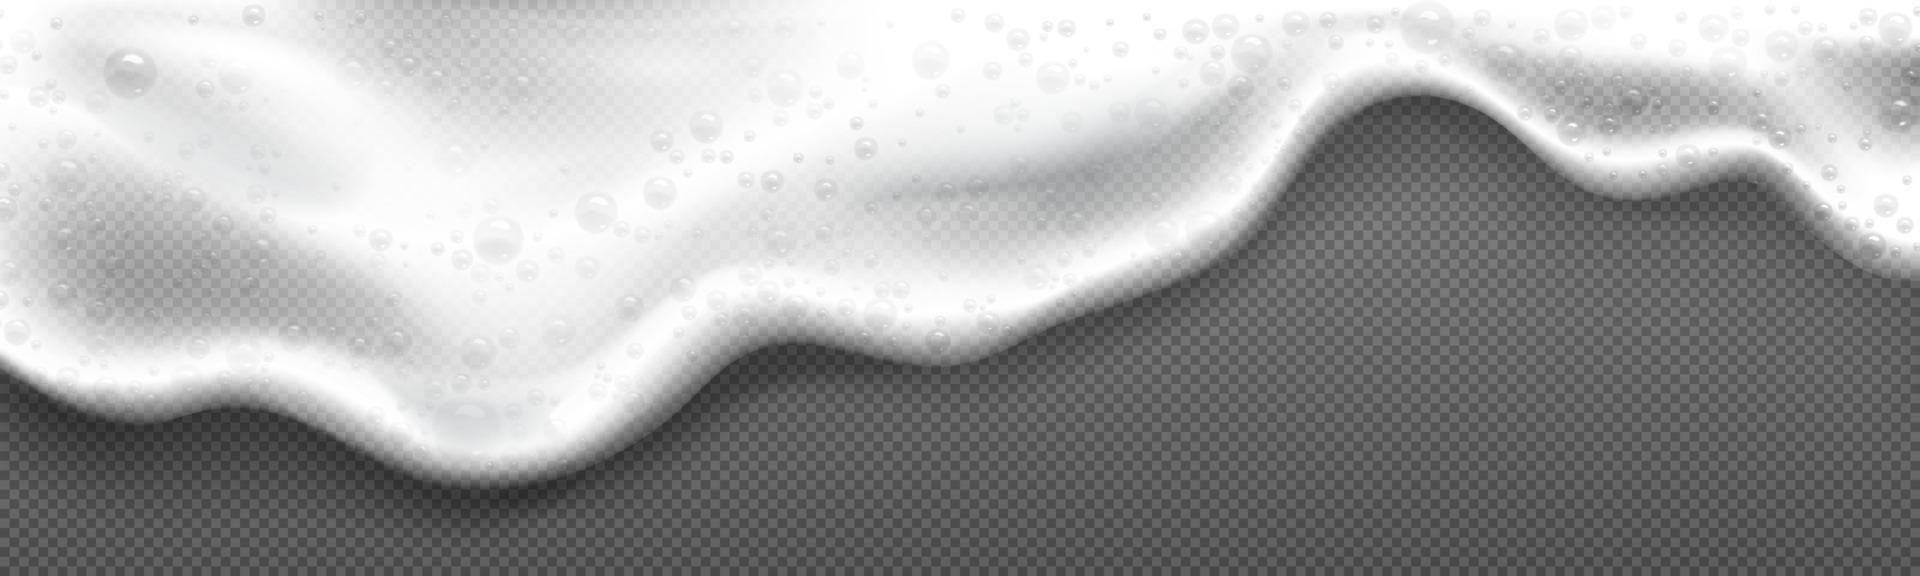 espuma de cerveja. textura de sabão branco com bolhas vetor